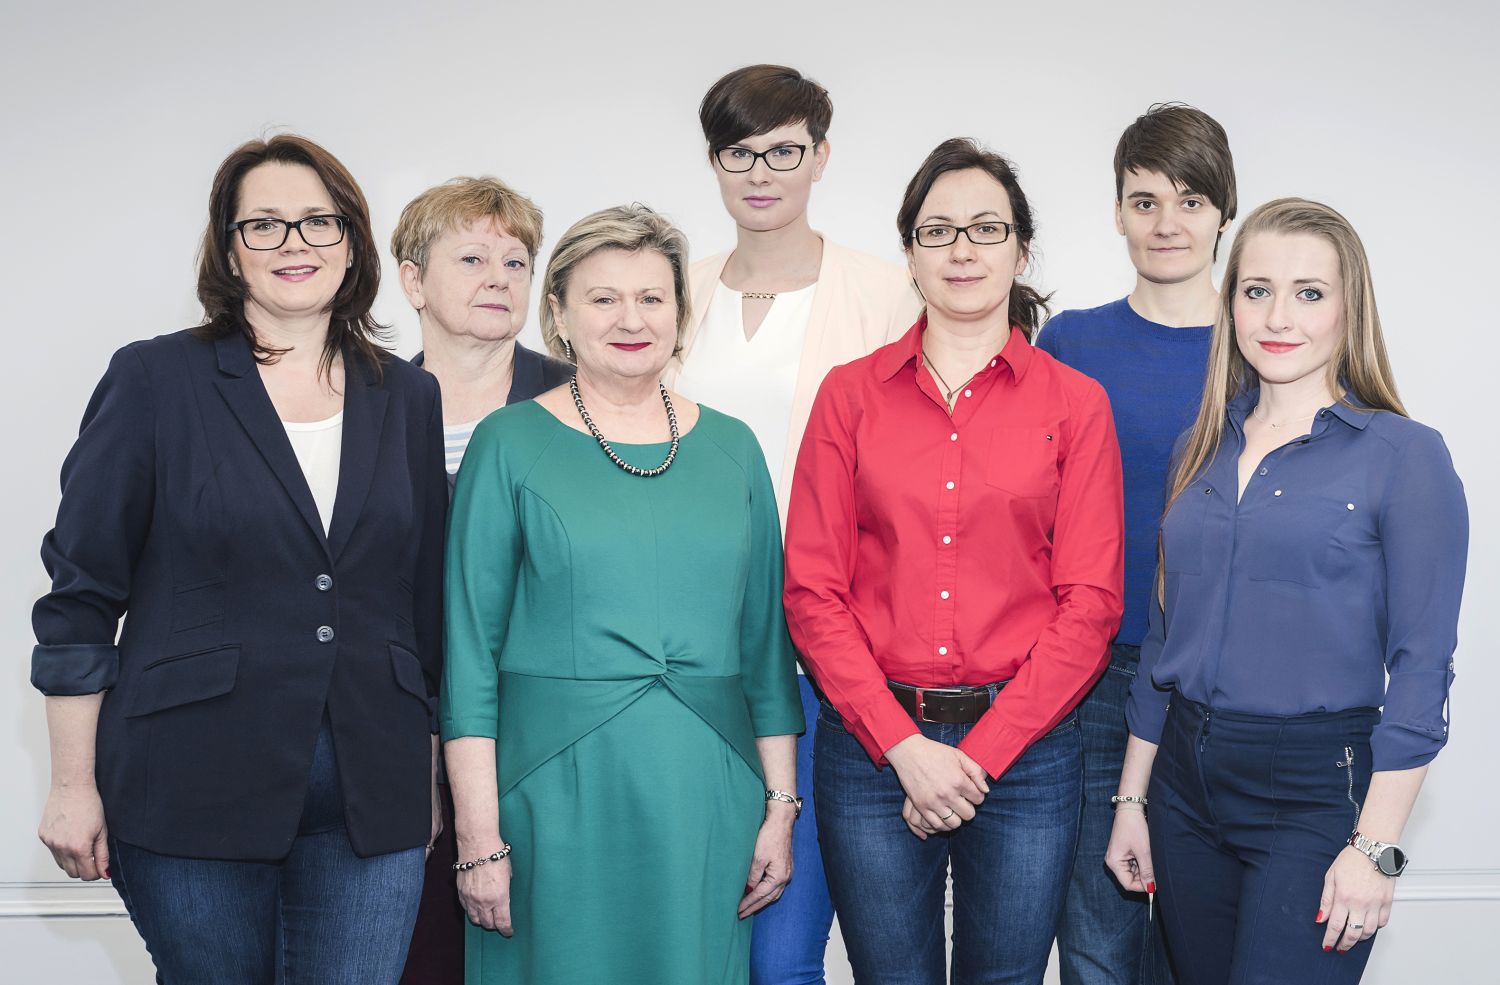 From left: Anna Bombińska, Małgorzata Węsierska, Elżbieta Szeląg, Magdalena Baszuk, Aneta Szymaszek, Katarzyna Jabłońska, Anna Dacewicz.	